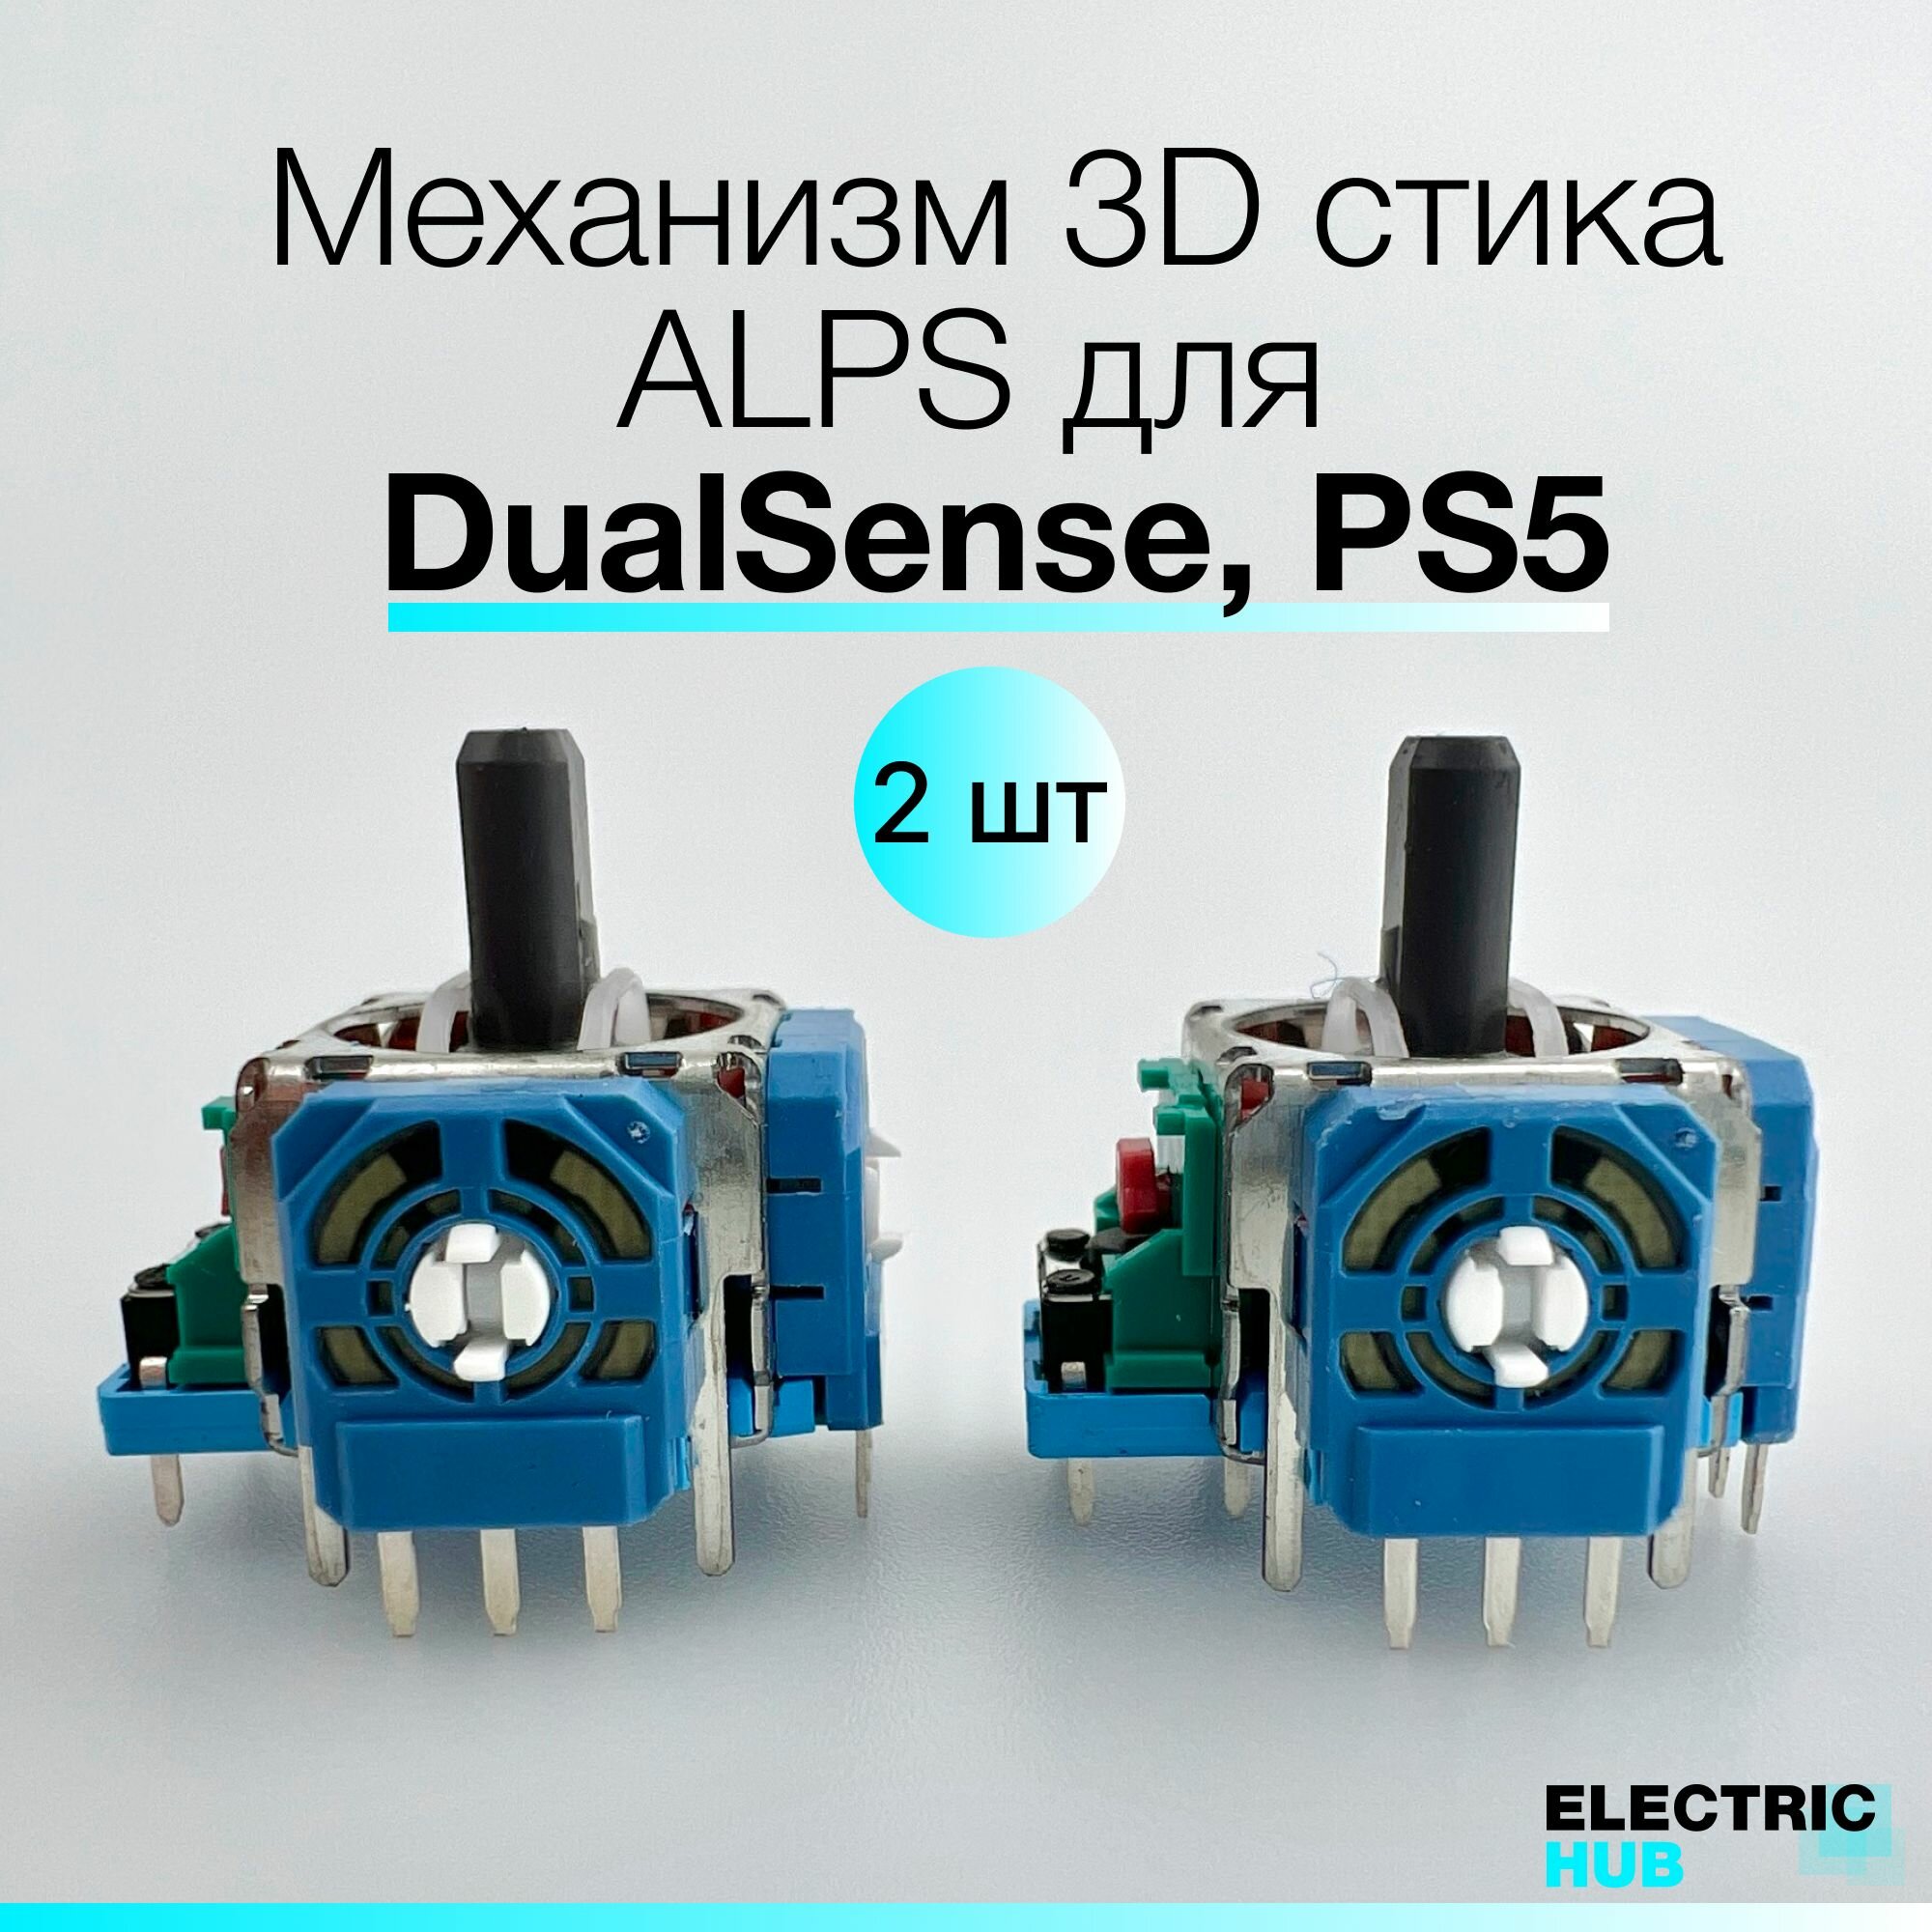 Оригинальный механизм 3D стика ALPS для DualSense, PS5, Синий, для ремонта джойстика/геймпада, 2 шт.